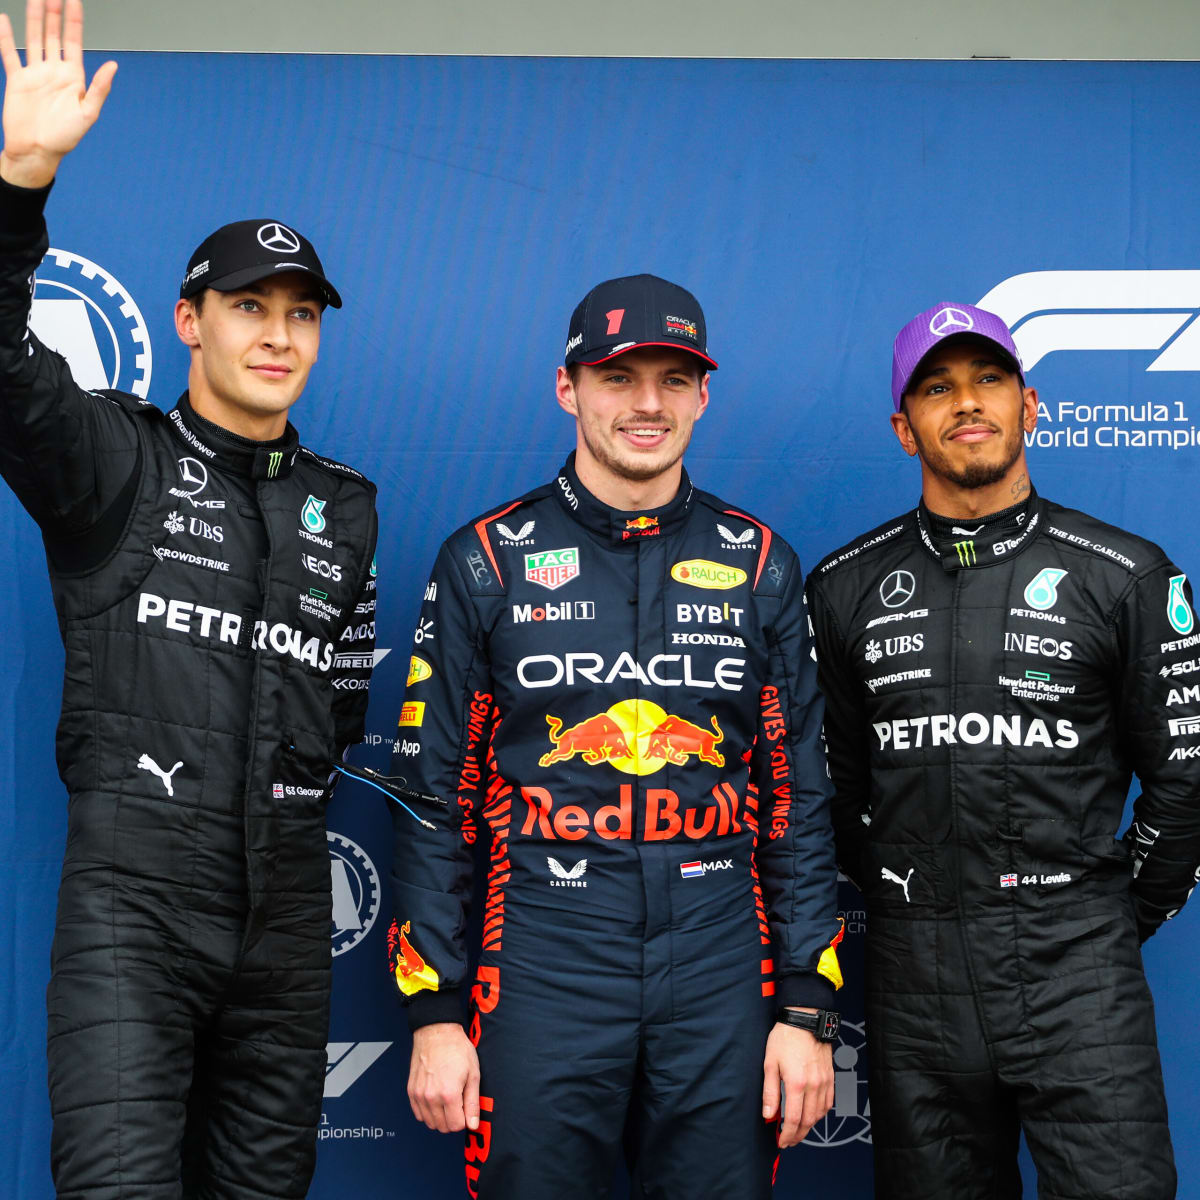 Max Verstappen sulla rivalità con Lewis Hamilton - GPblog